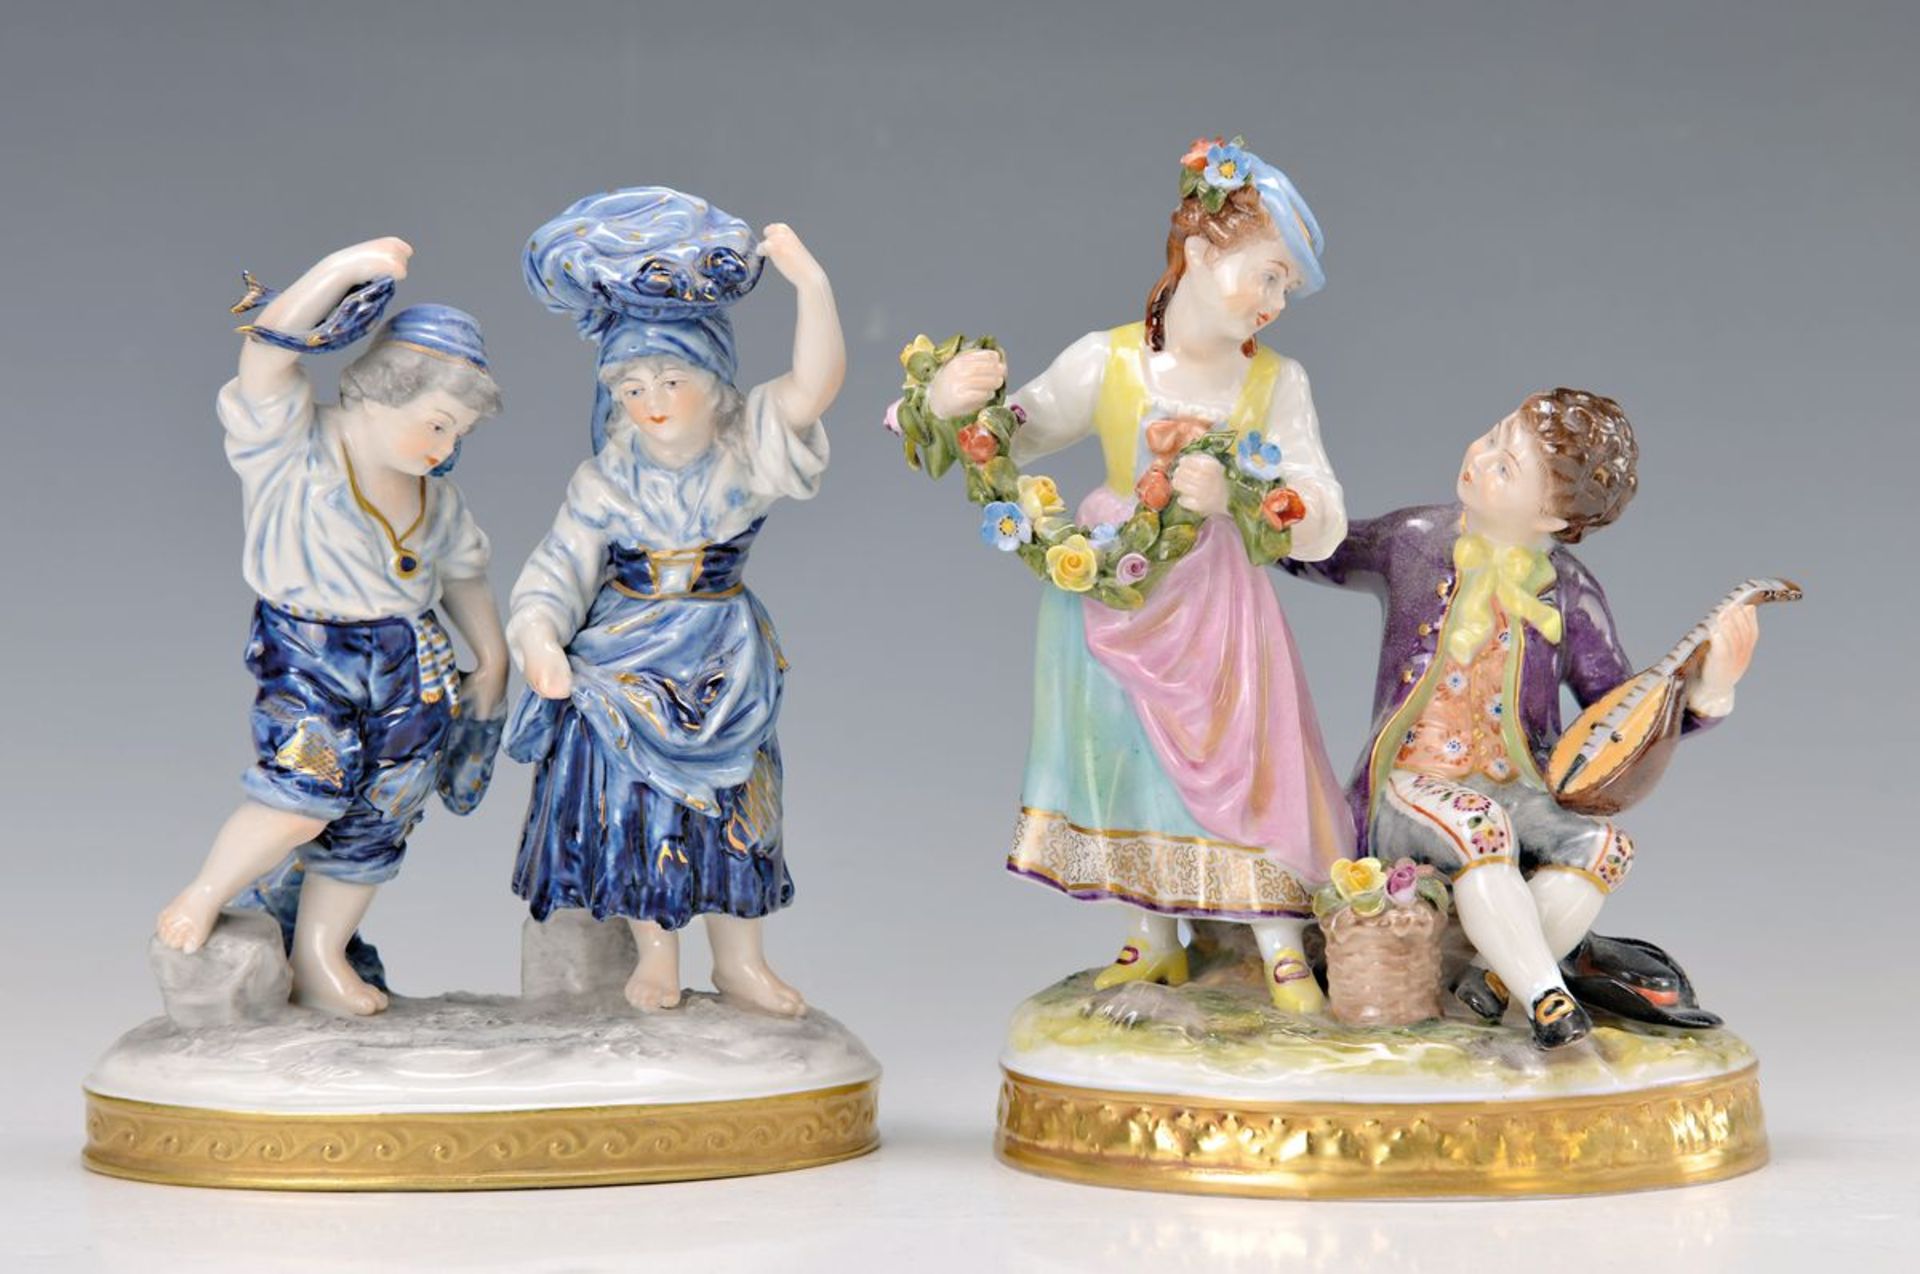 2 Porzellanfigurengruppen, Volkstedt, um 1900-10, Fischerpaar, blau-weiß bemalt, Goldstaffage, H.